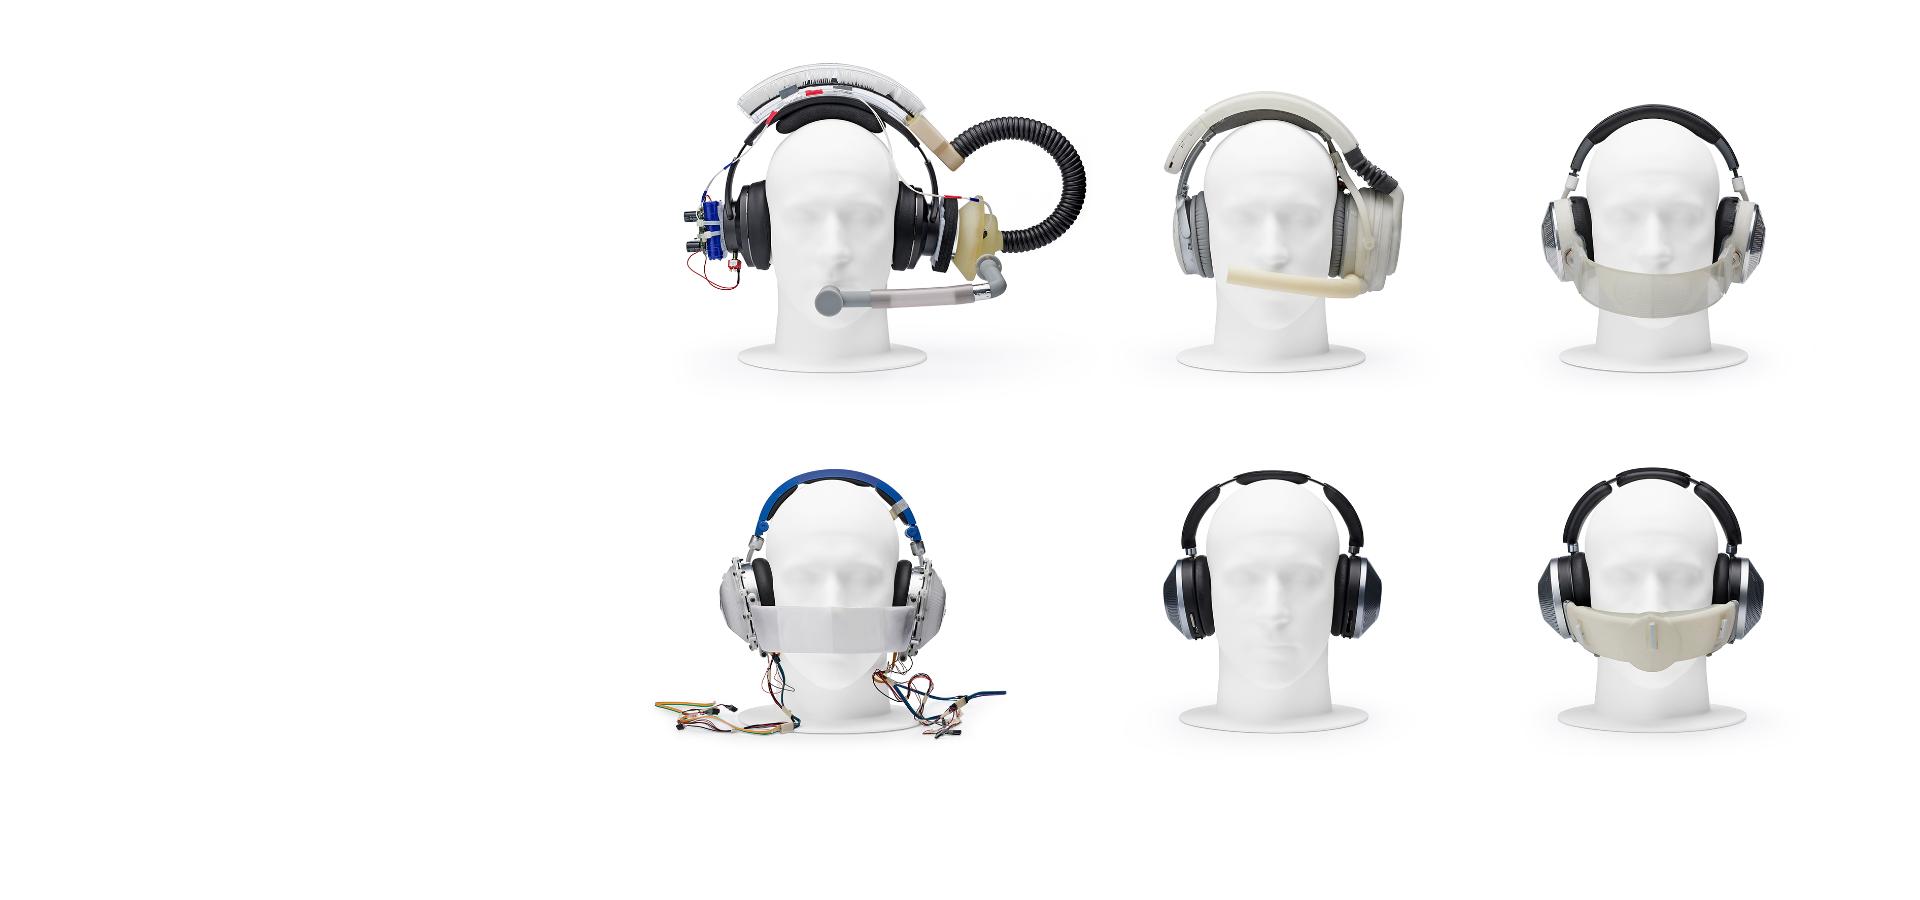 Čtyři hlavy figurín s různými prototypy sluchátek.